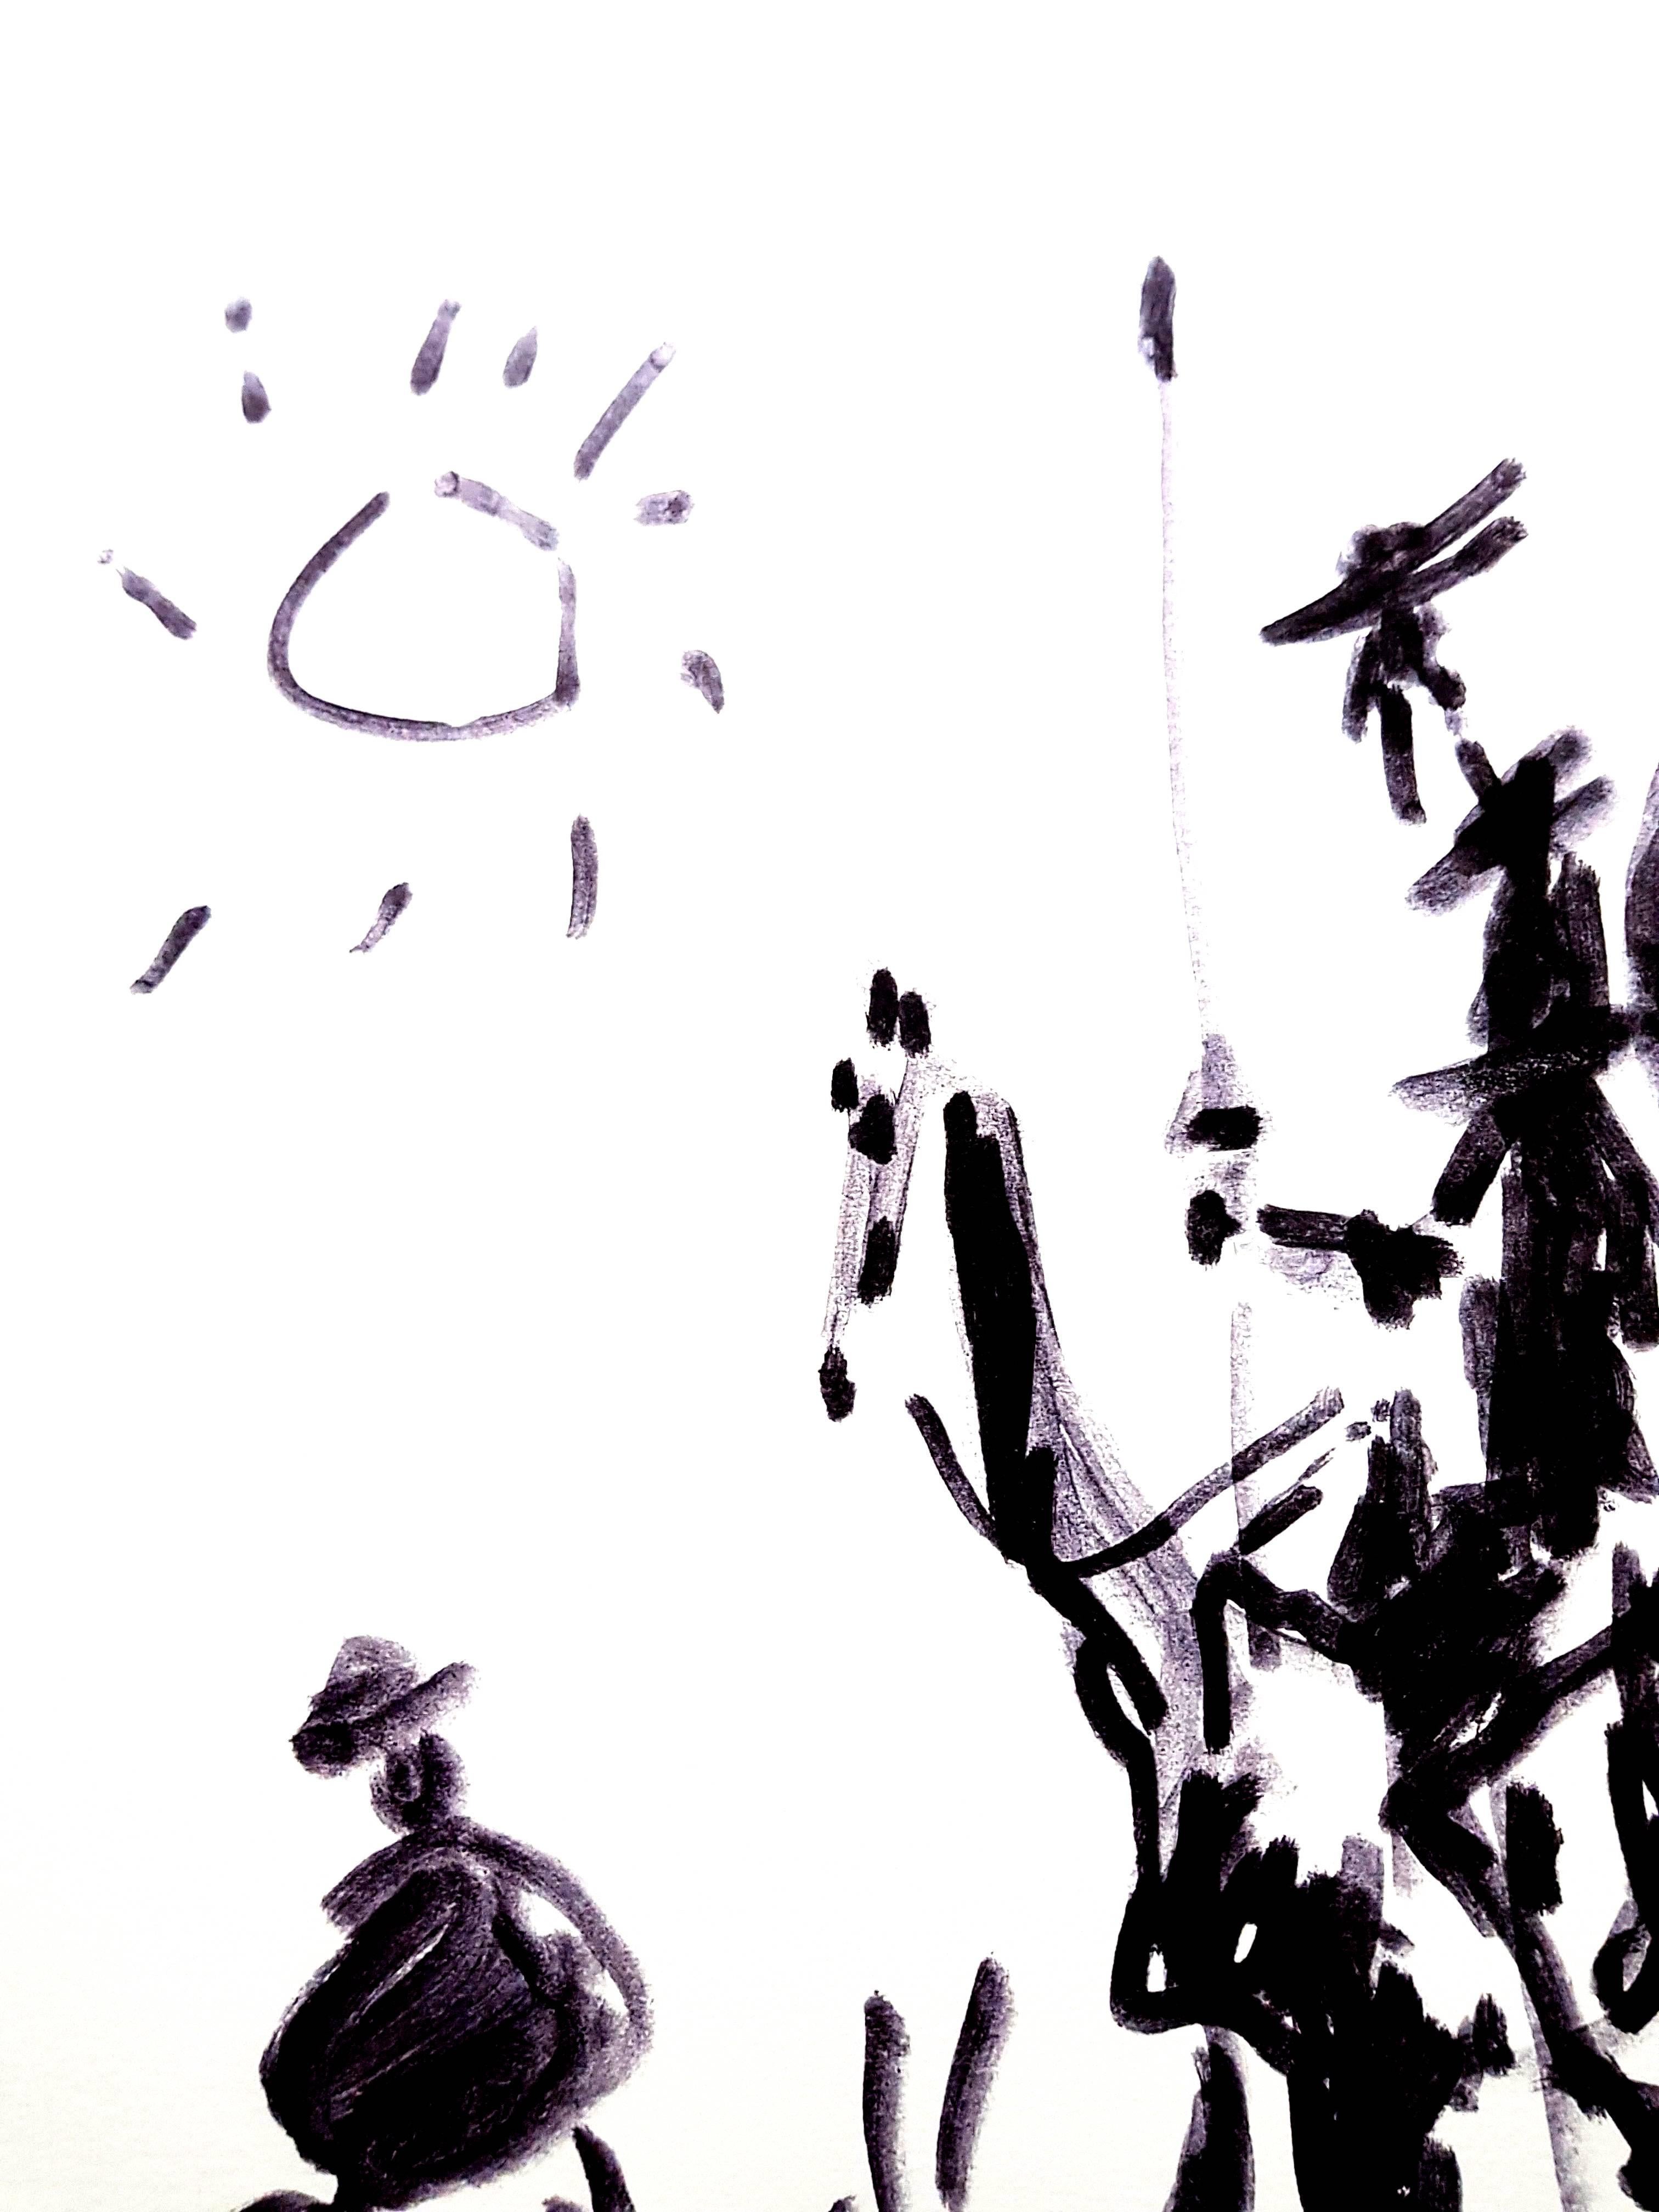 Nach PABLO PICASSO (1881-1973)
Don Quijote
1955
Abmessungen: 65 x 50 cm
Gedruckte Unterschrift und Datum
Edition Succession Picasso, Paris (posthume Reproduktionsausgabe)
Ausgaben von Paix